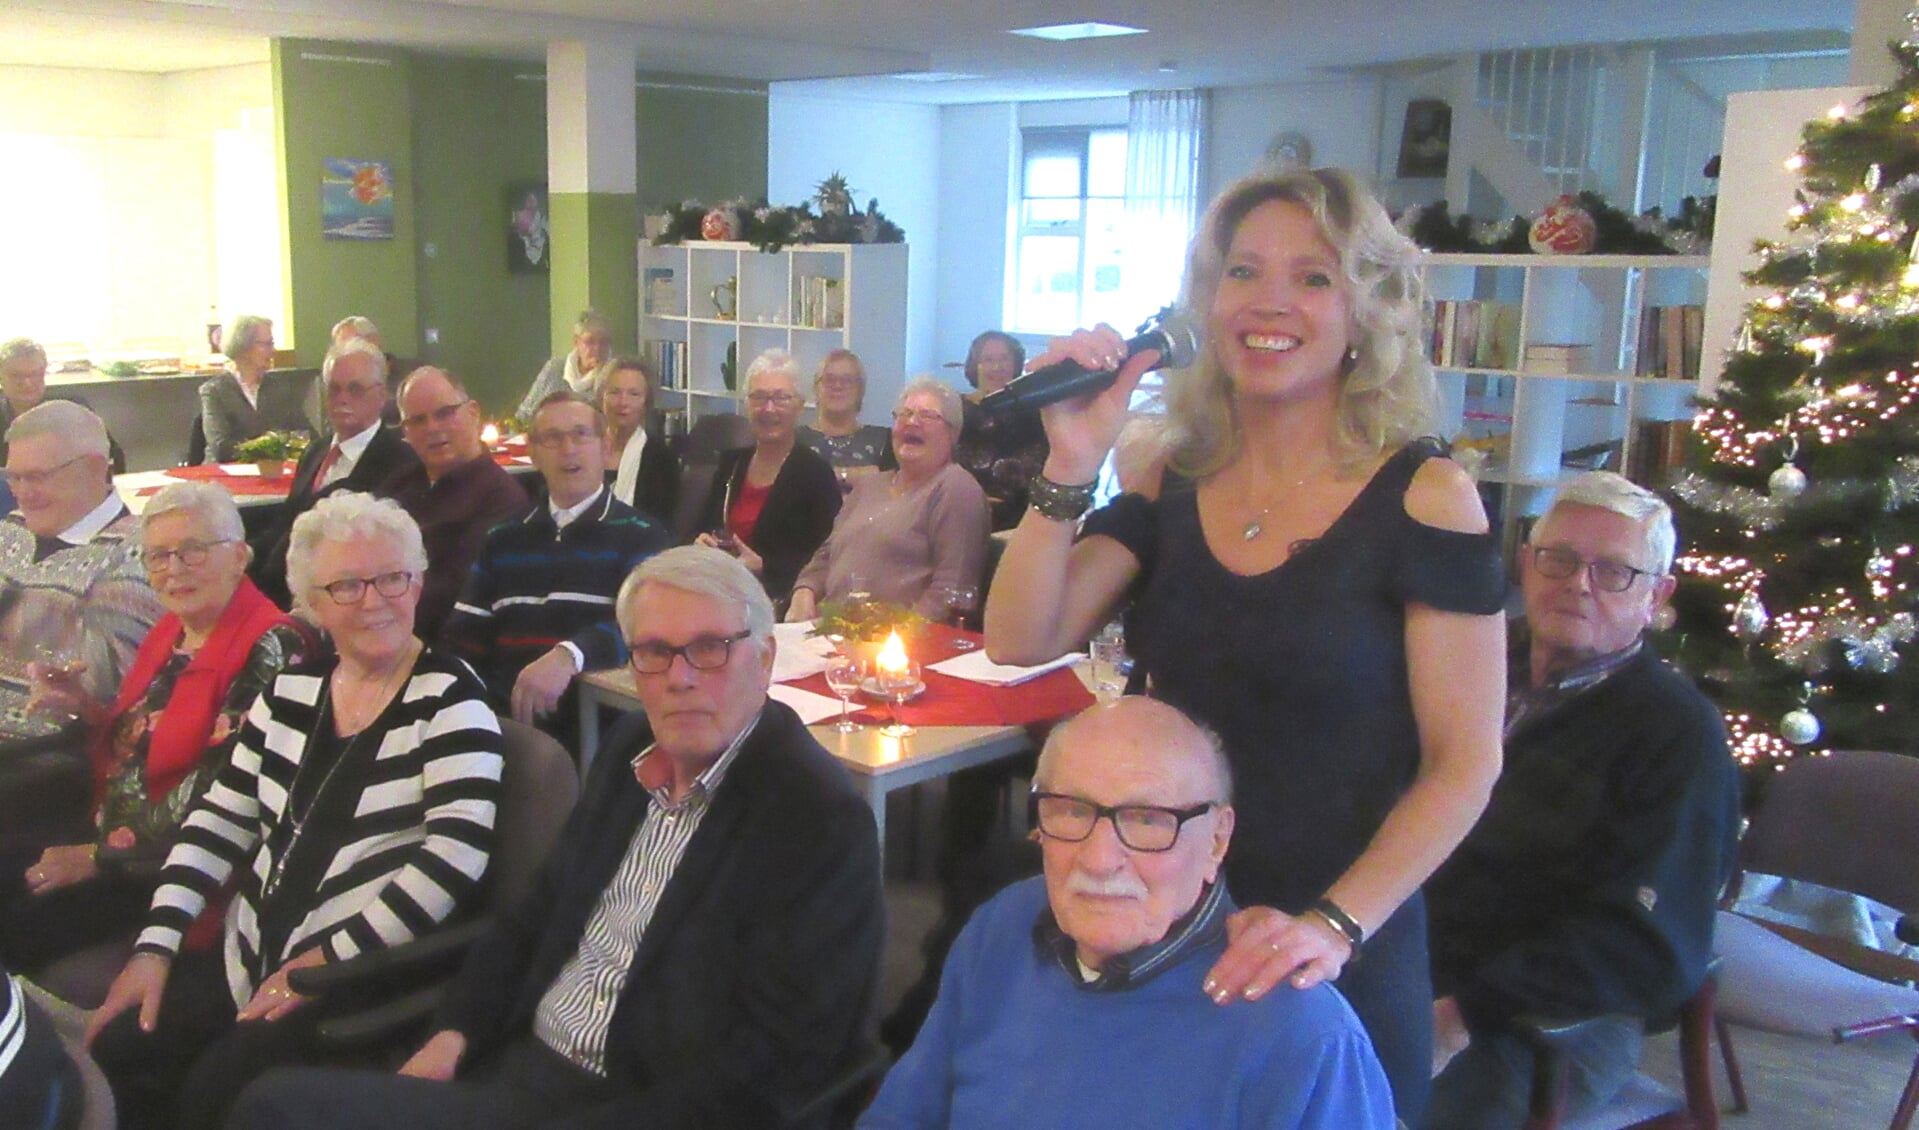 De zangeres neemt haar publiek mee op een muzikale reis. Zoals hier bij een seniorenclub in de kop van Noord-Holland. (Foto: Henk van Torenvlied) 